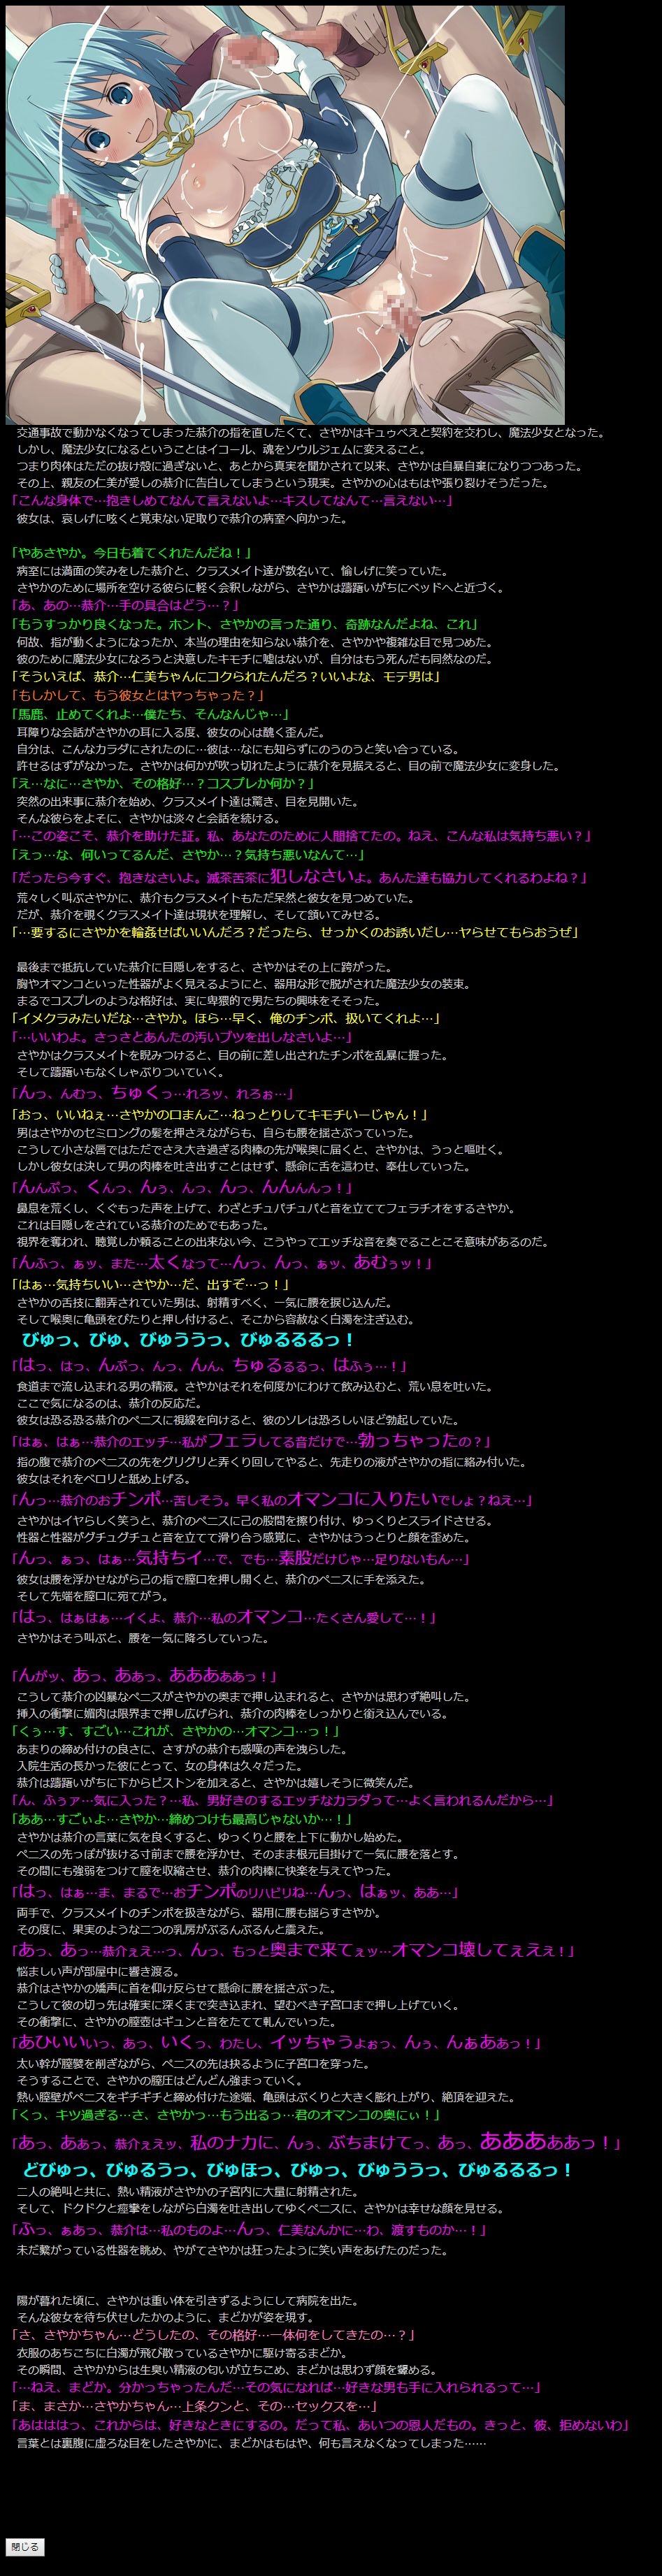 (COMIC1☆5) [LolitaChannel (Arigase Shinji)] Yuumei Chara Kannou Shousetsu CG Shuu No. 185!! Puella Magi Madoka Magica HaaHaa CG Shuu (Puella Magi Madoka Magica) 18